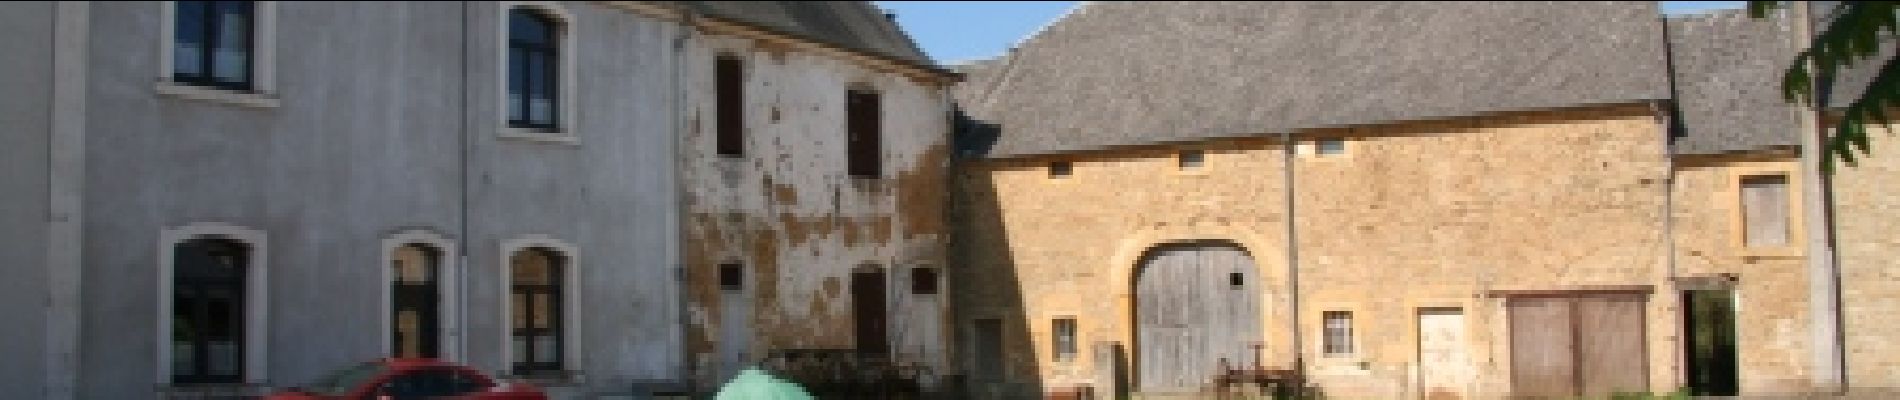 POI Saint-Léger - Cour du château - Photo